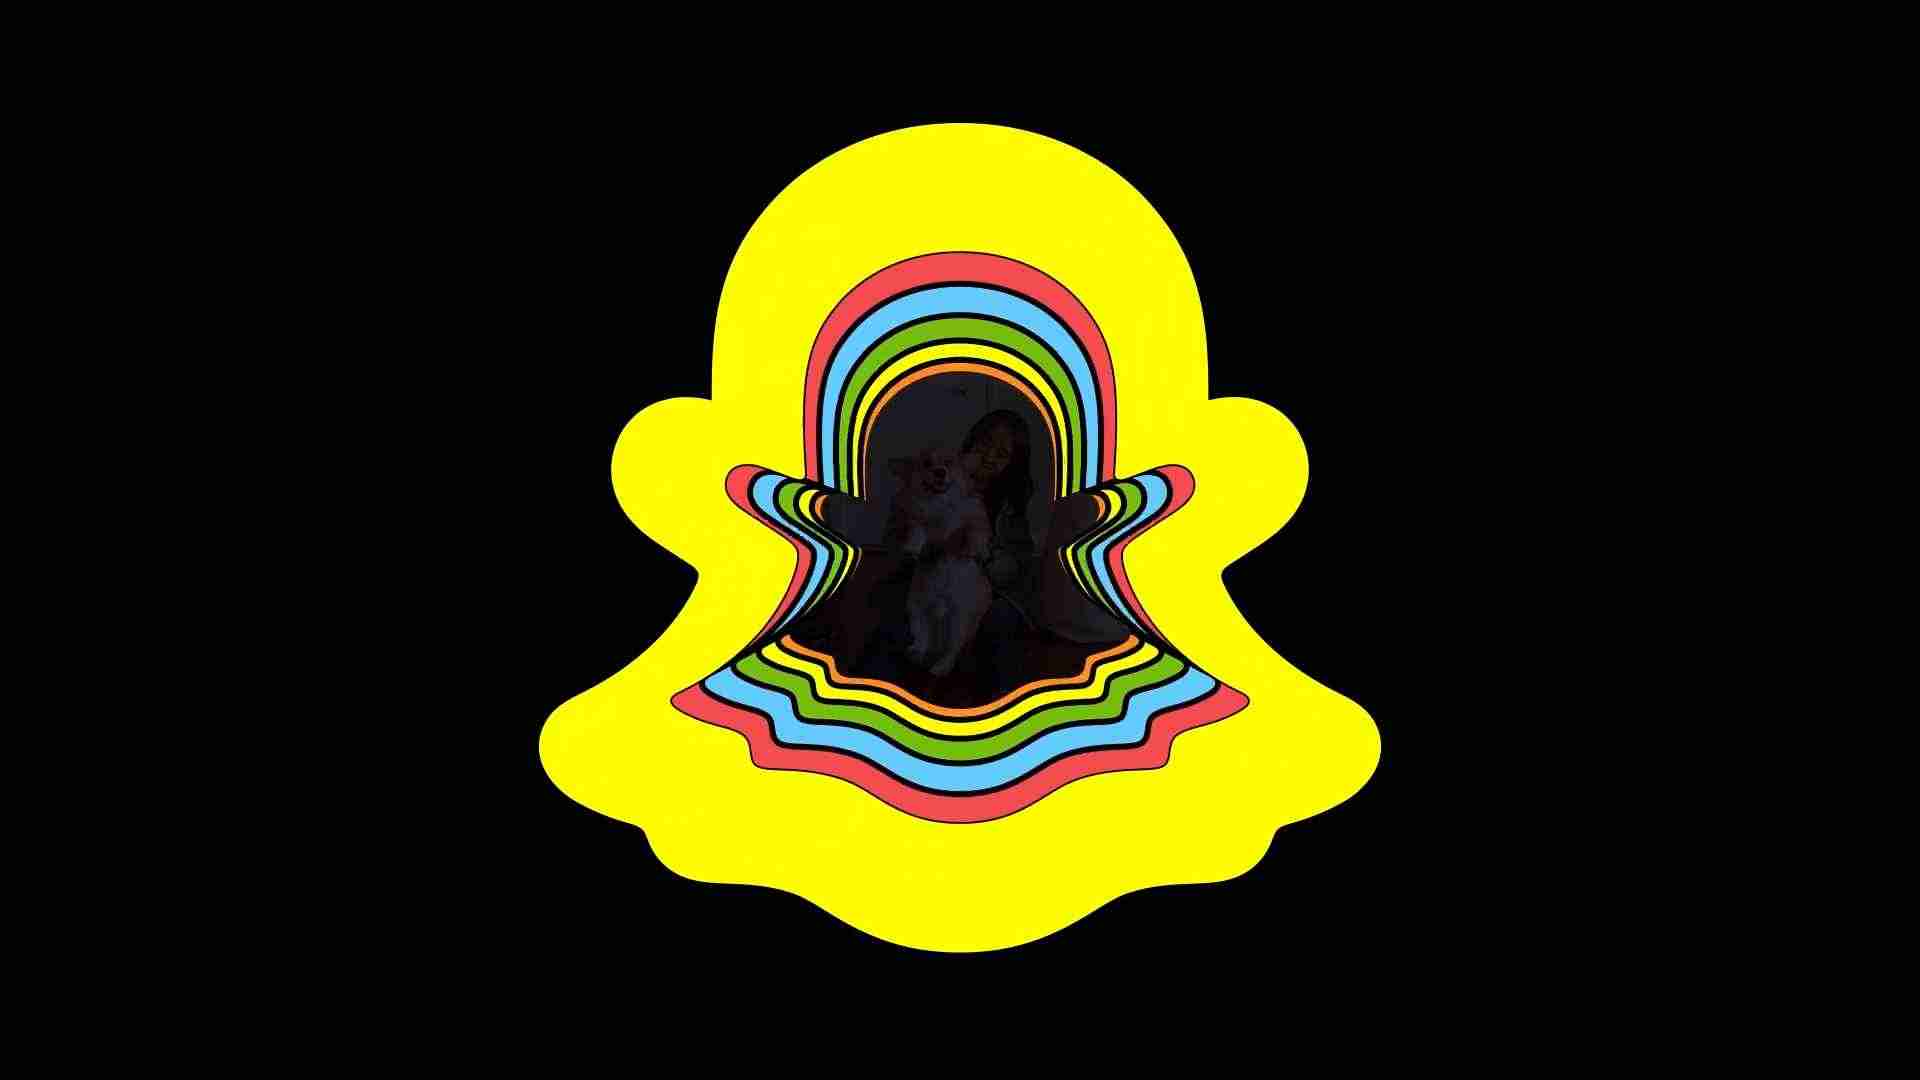 شعار سناب شات snapchat - خلفية سوداء